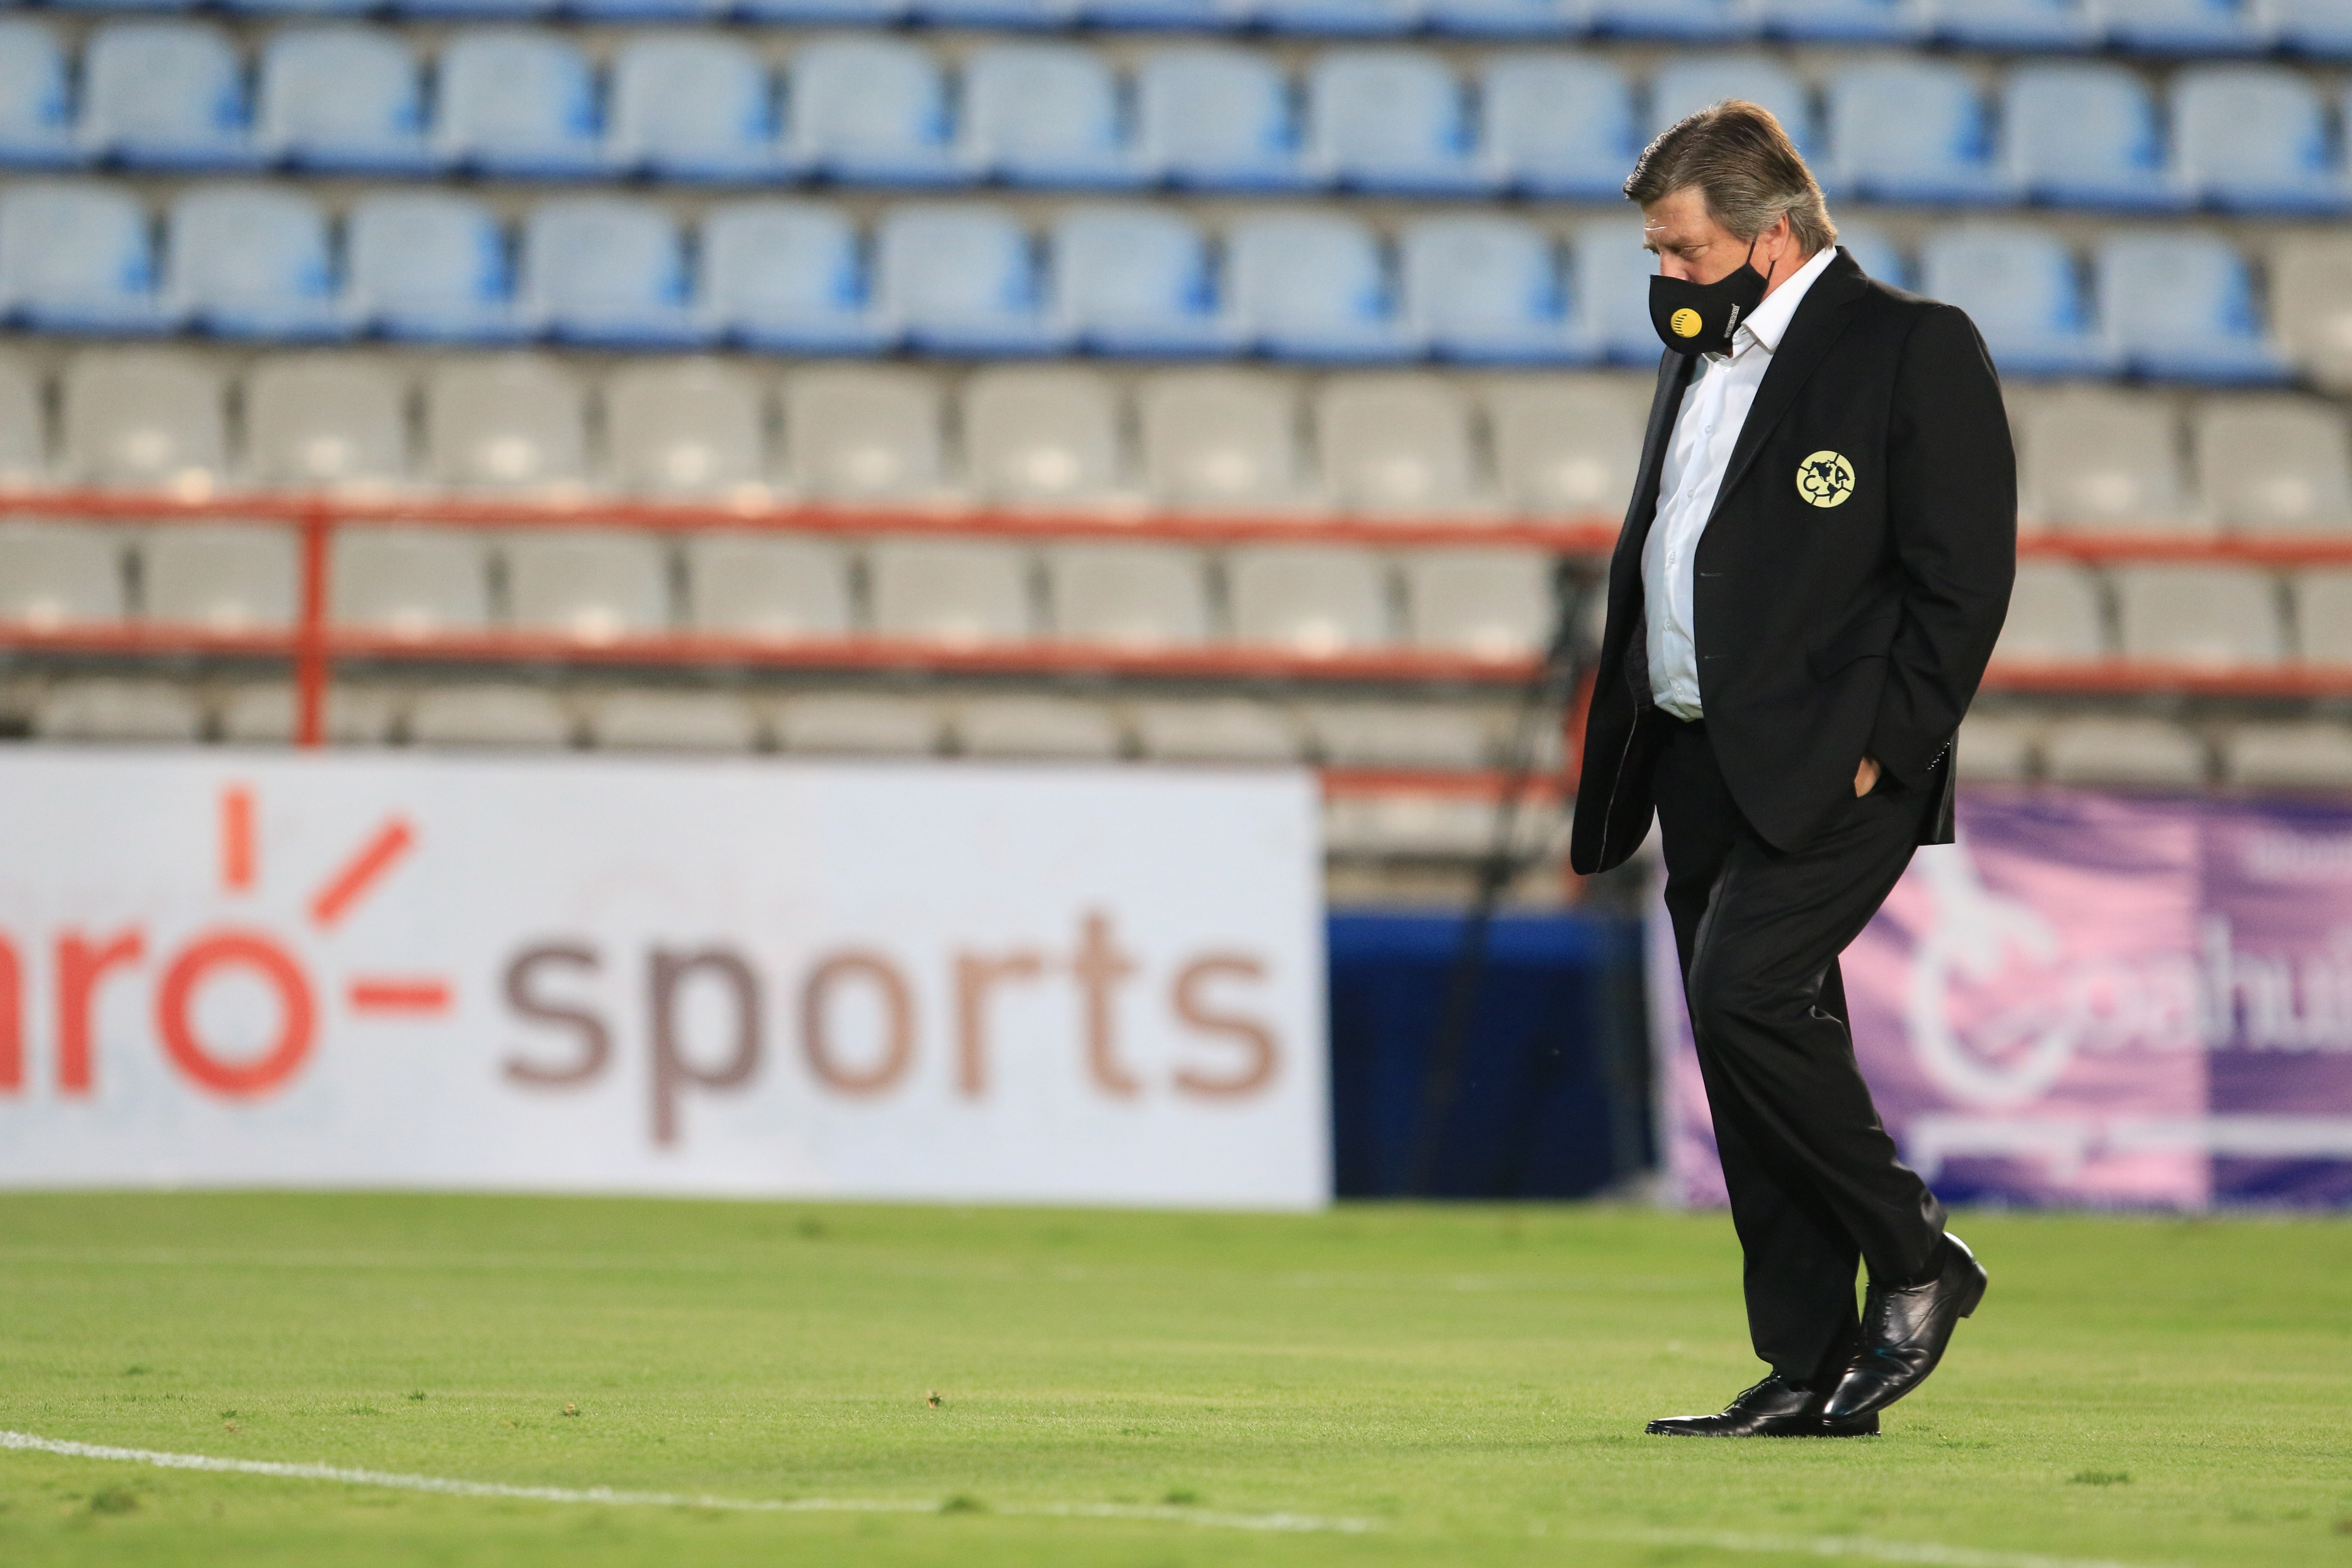 El director técnico de las águilas podría estar al final de su carrera frente al equipo (Foto: Miguel Herrera. EFE/David Martinez Pelcastre/Archivo)
